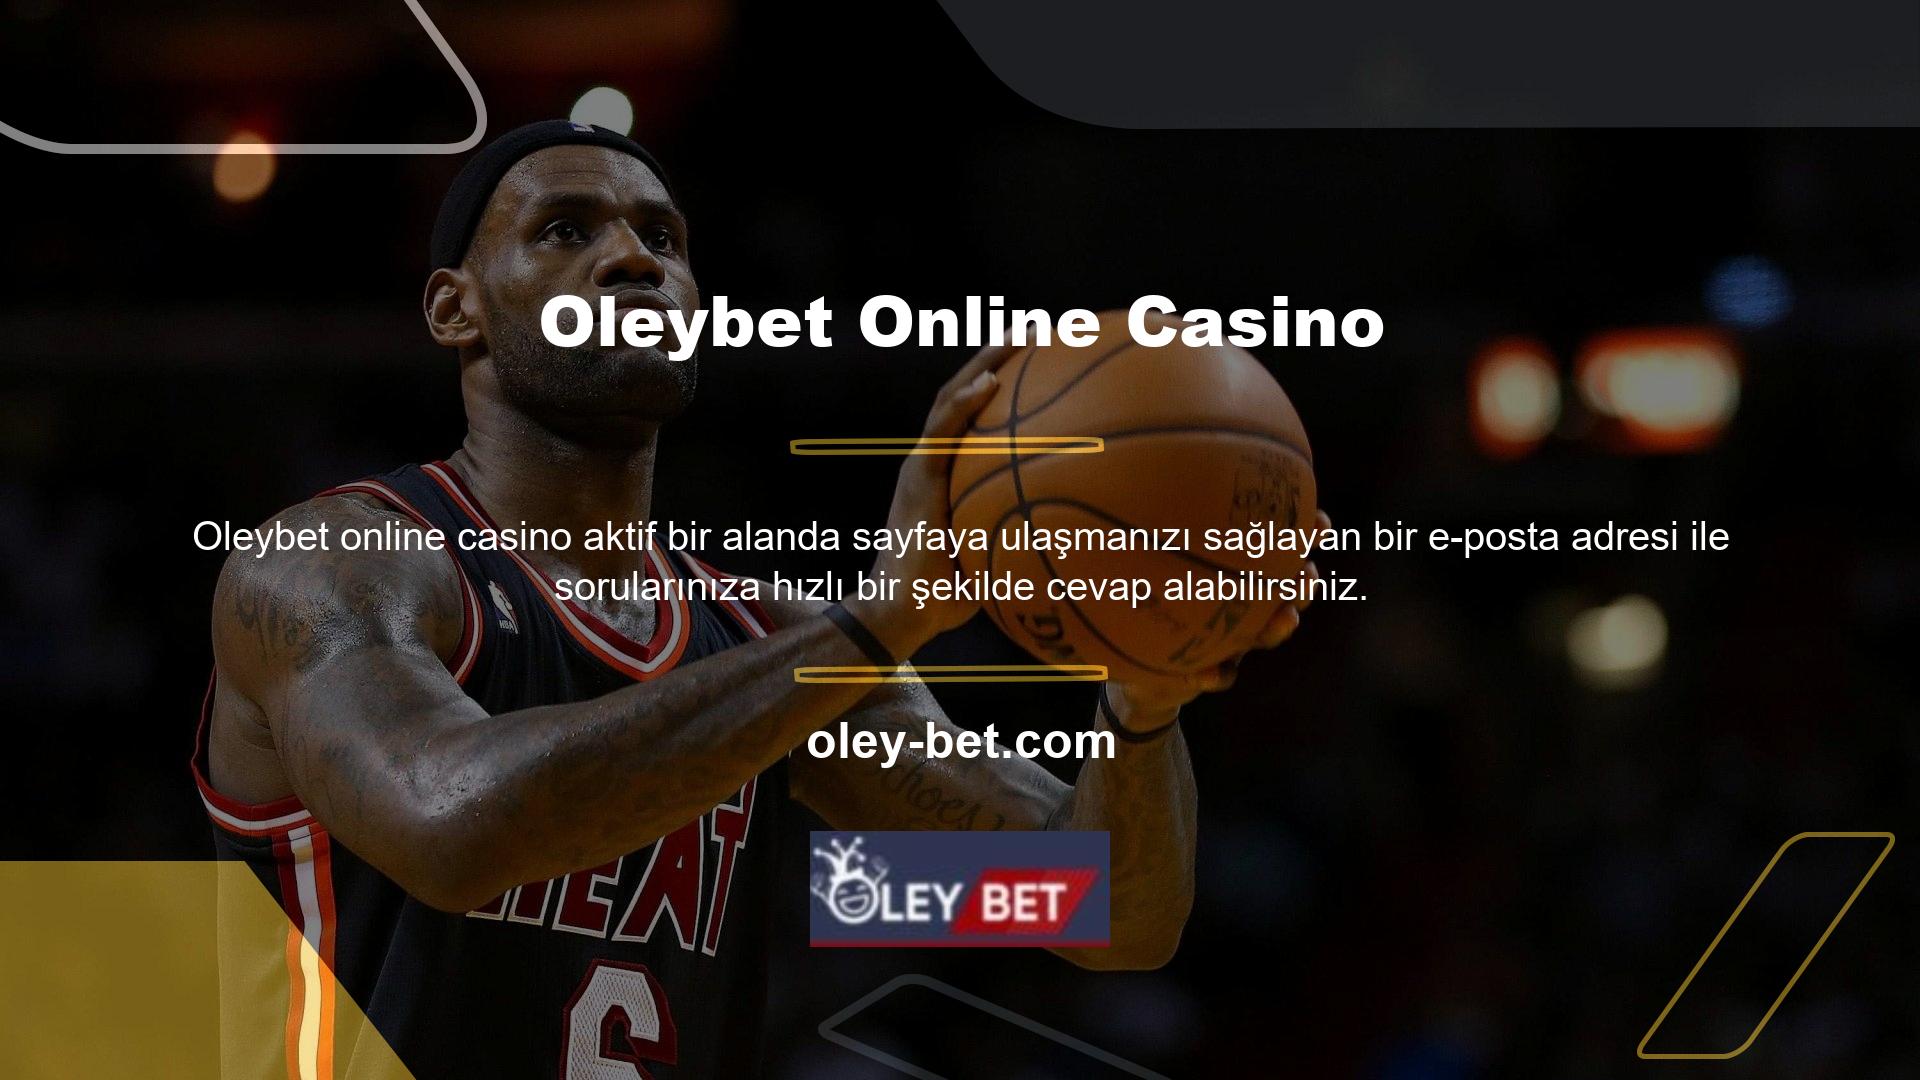 Oleybet online casino sitesinde canlı oyunlar sizi bekliyor